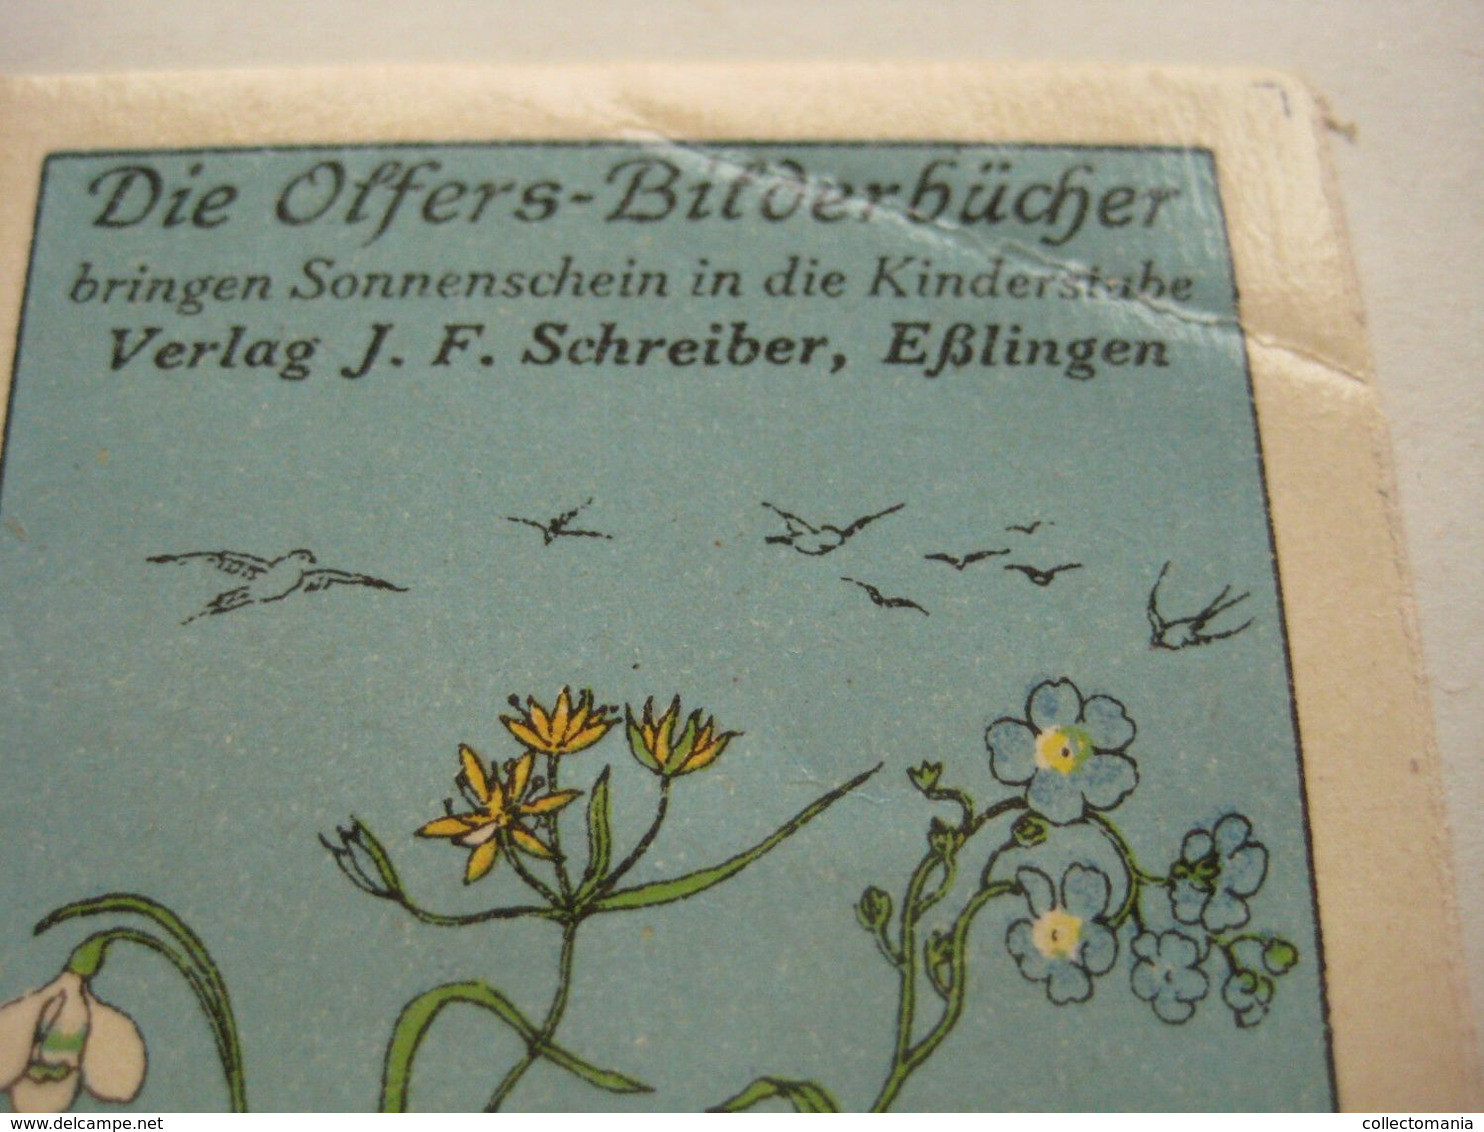 6 POSTER STAMPS Anno1913  Cinderella Advertising Vignettes Art OLFERS BILDERBUCHEN Schreiber In Eslingen ART Books - Bilderbücher